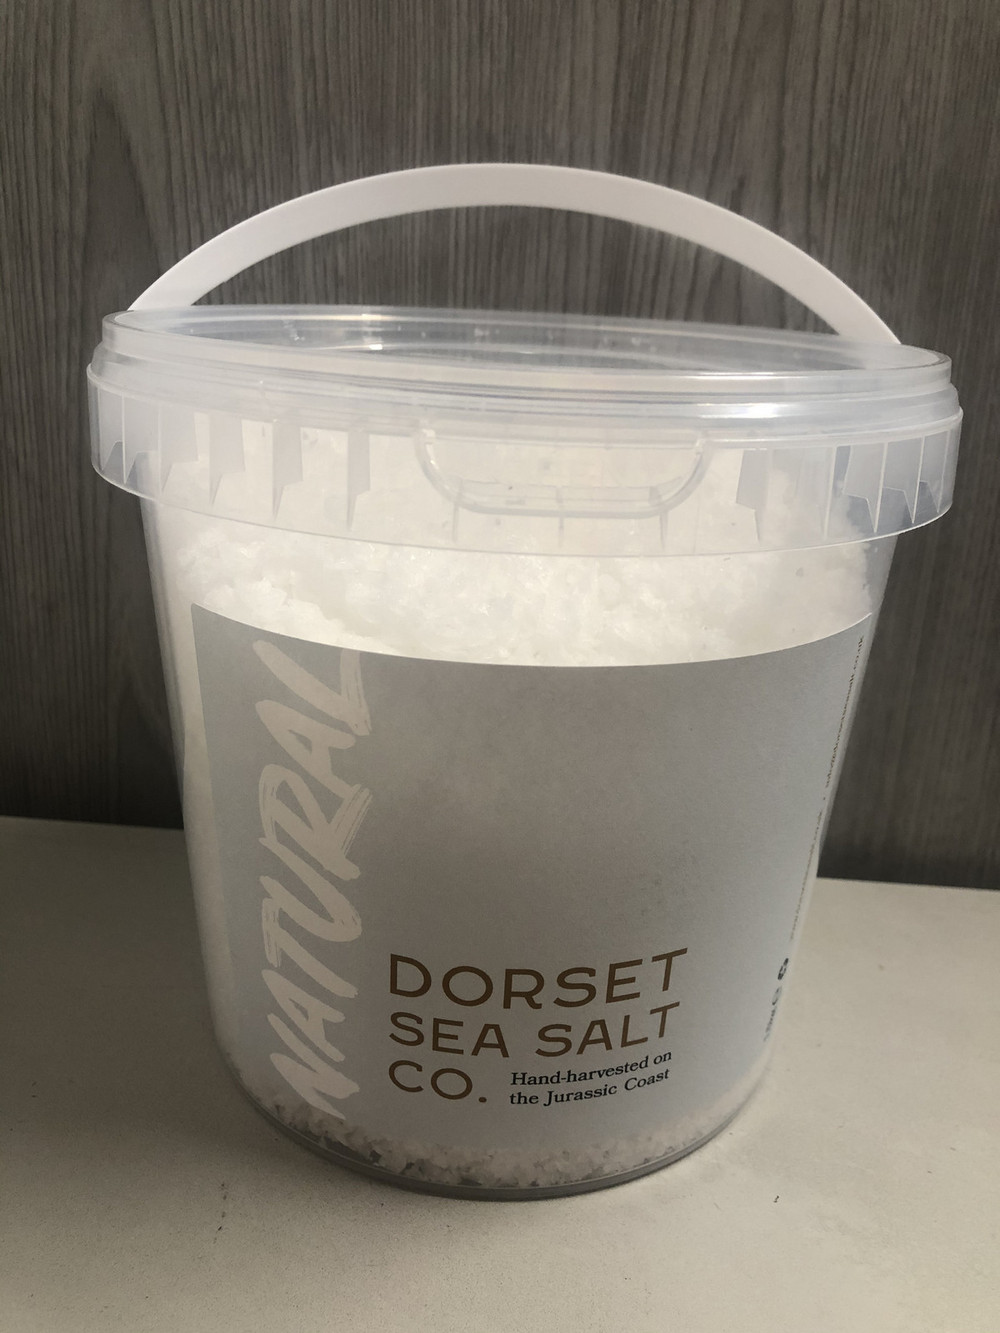 Dorset Sea Salt Co Natural Salt 1 5kg Dated May 2022 32361578 